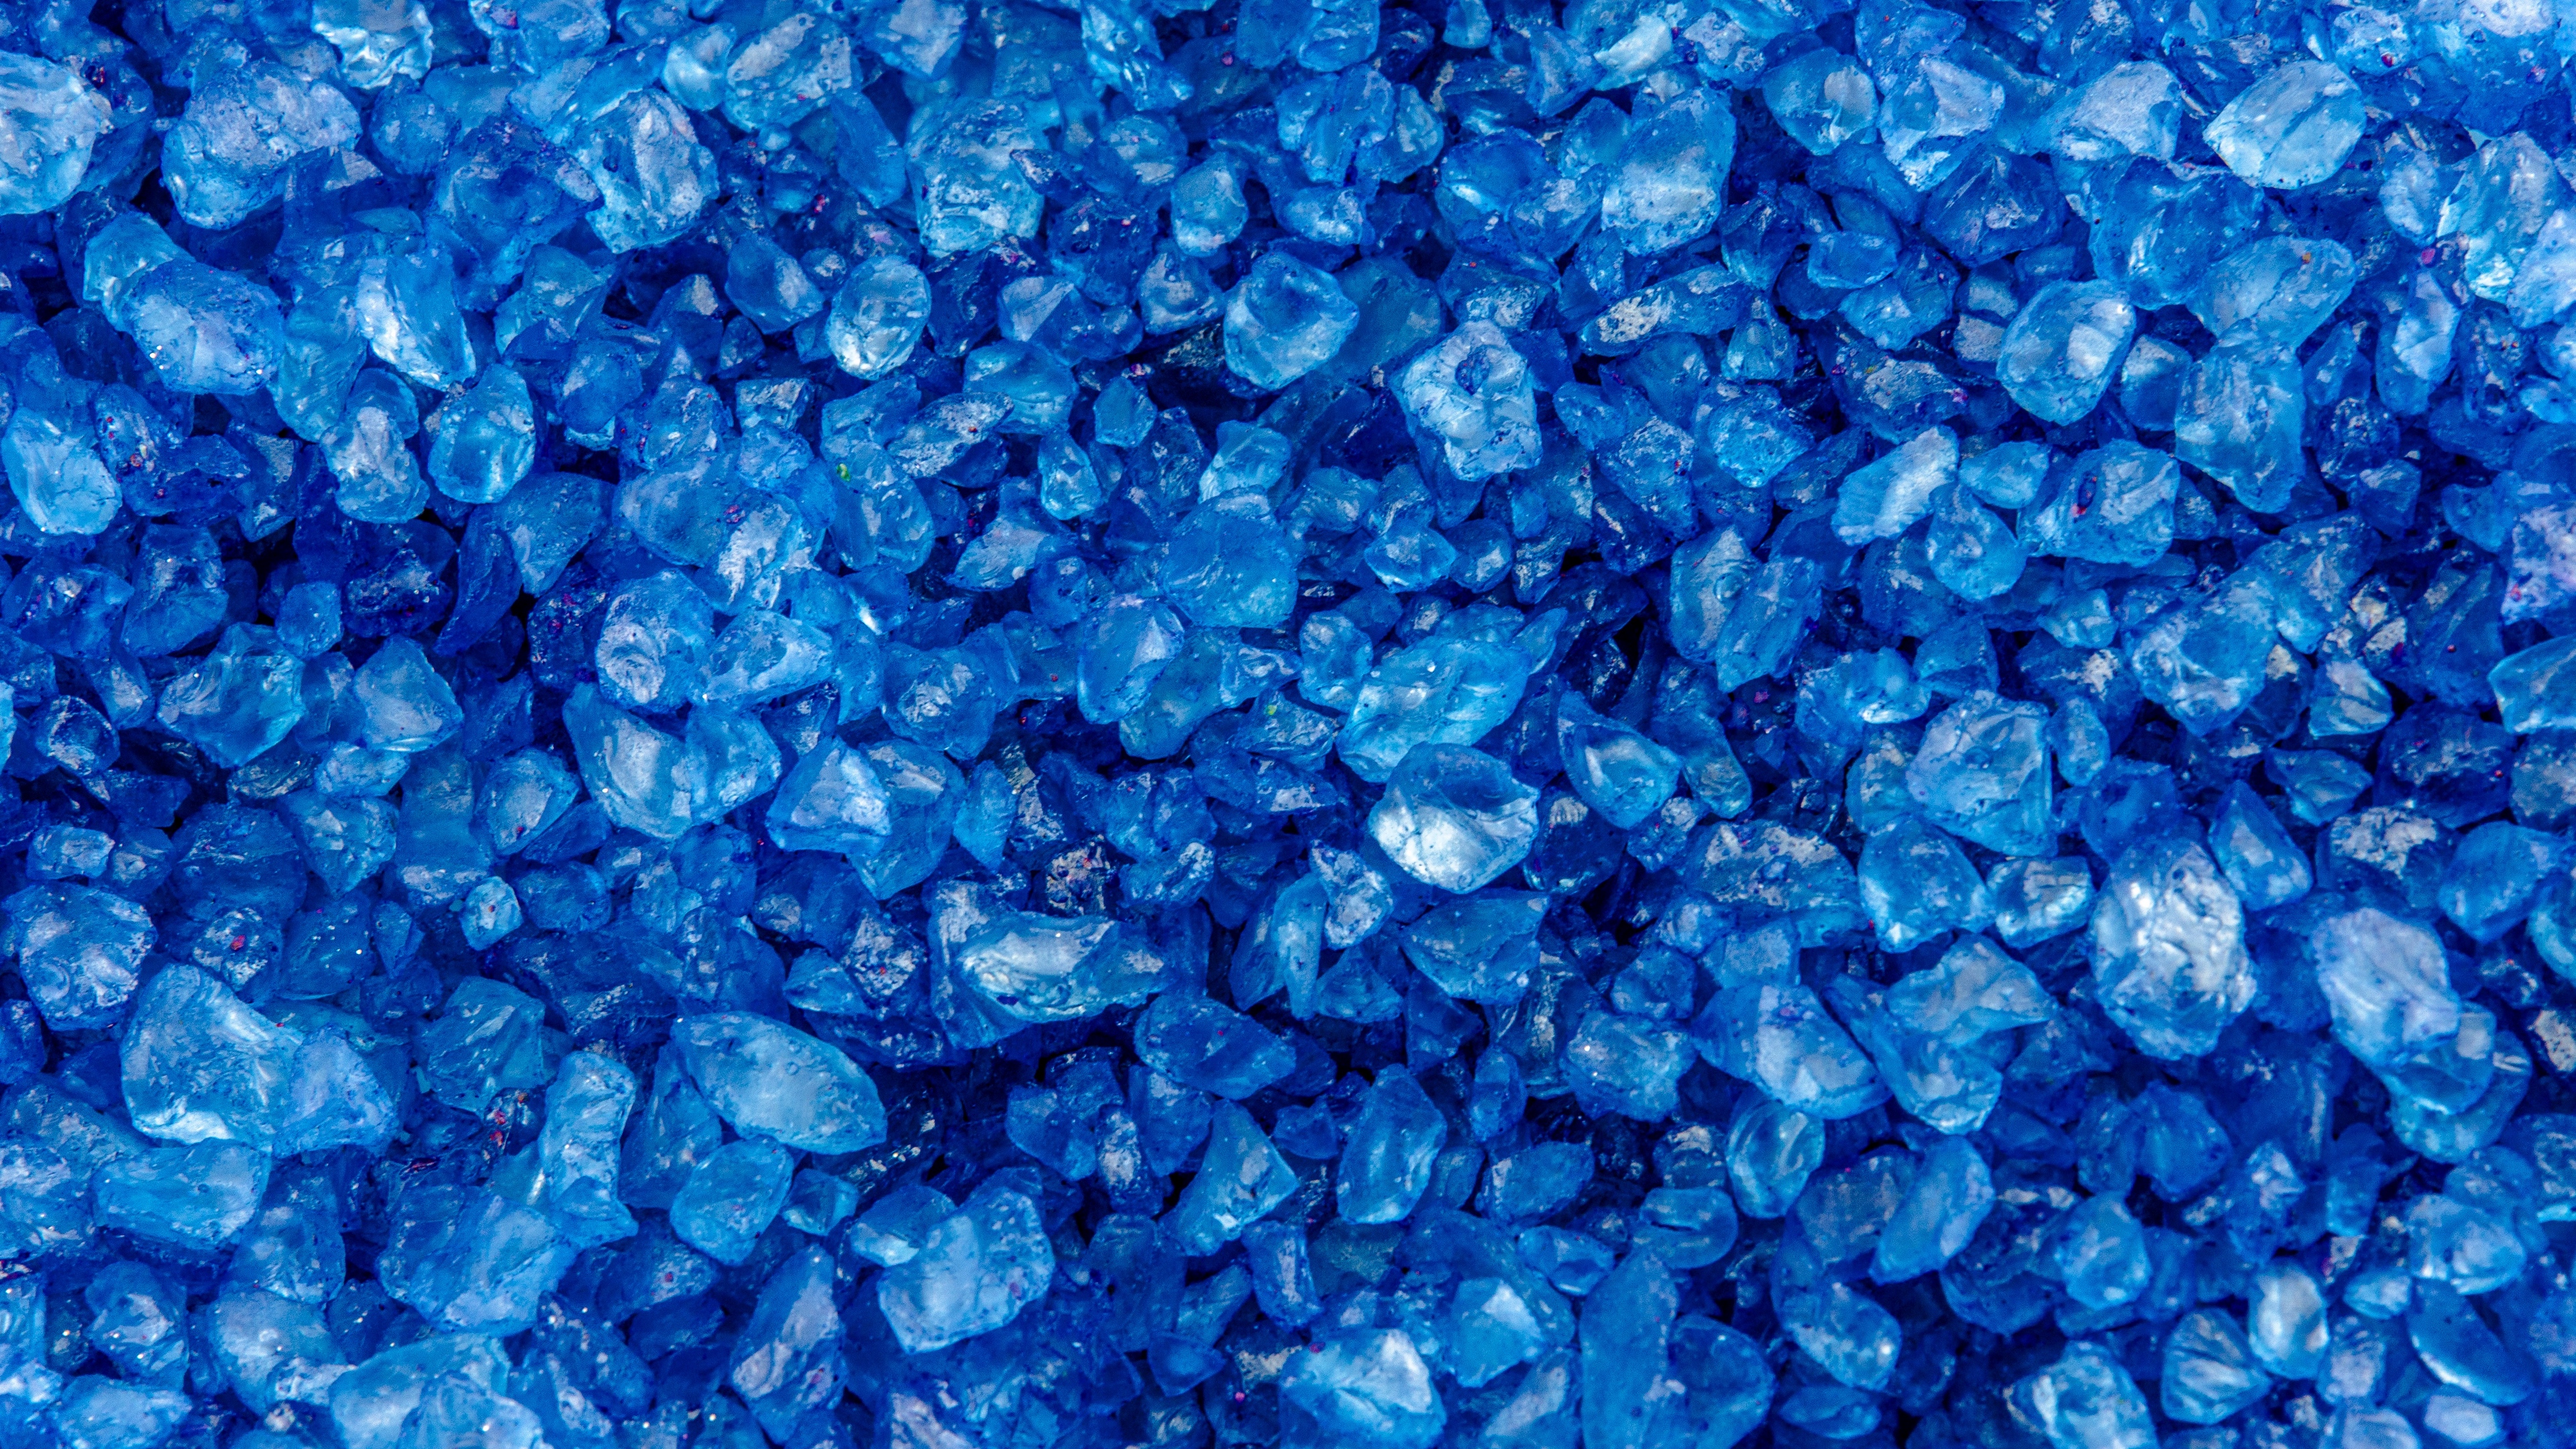 pebbles blue texture stones 4k 1536097863 - pebbles, blue, texture, stones 4k - Texture, pebbles, blue